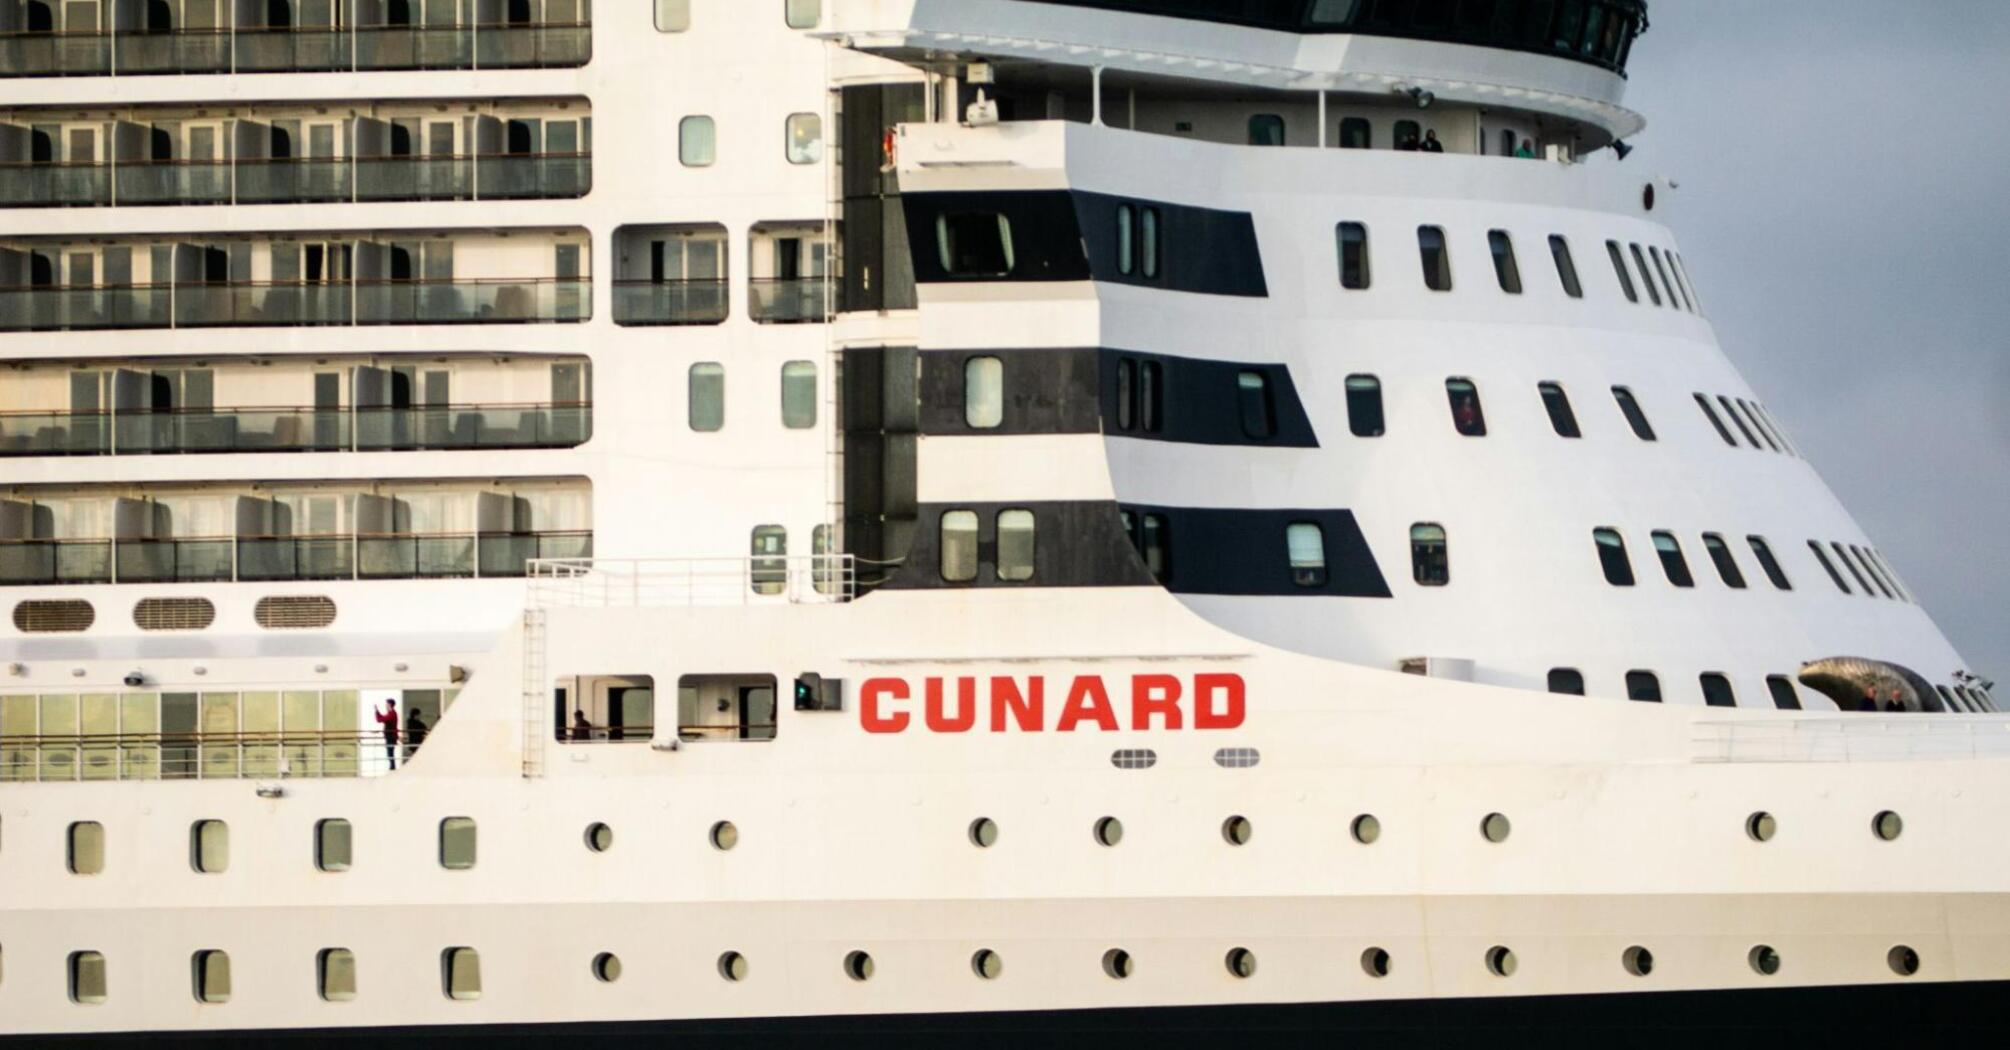 A cruise ship of Cunard